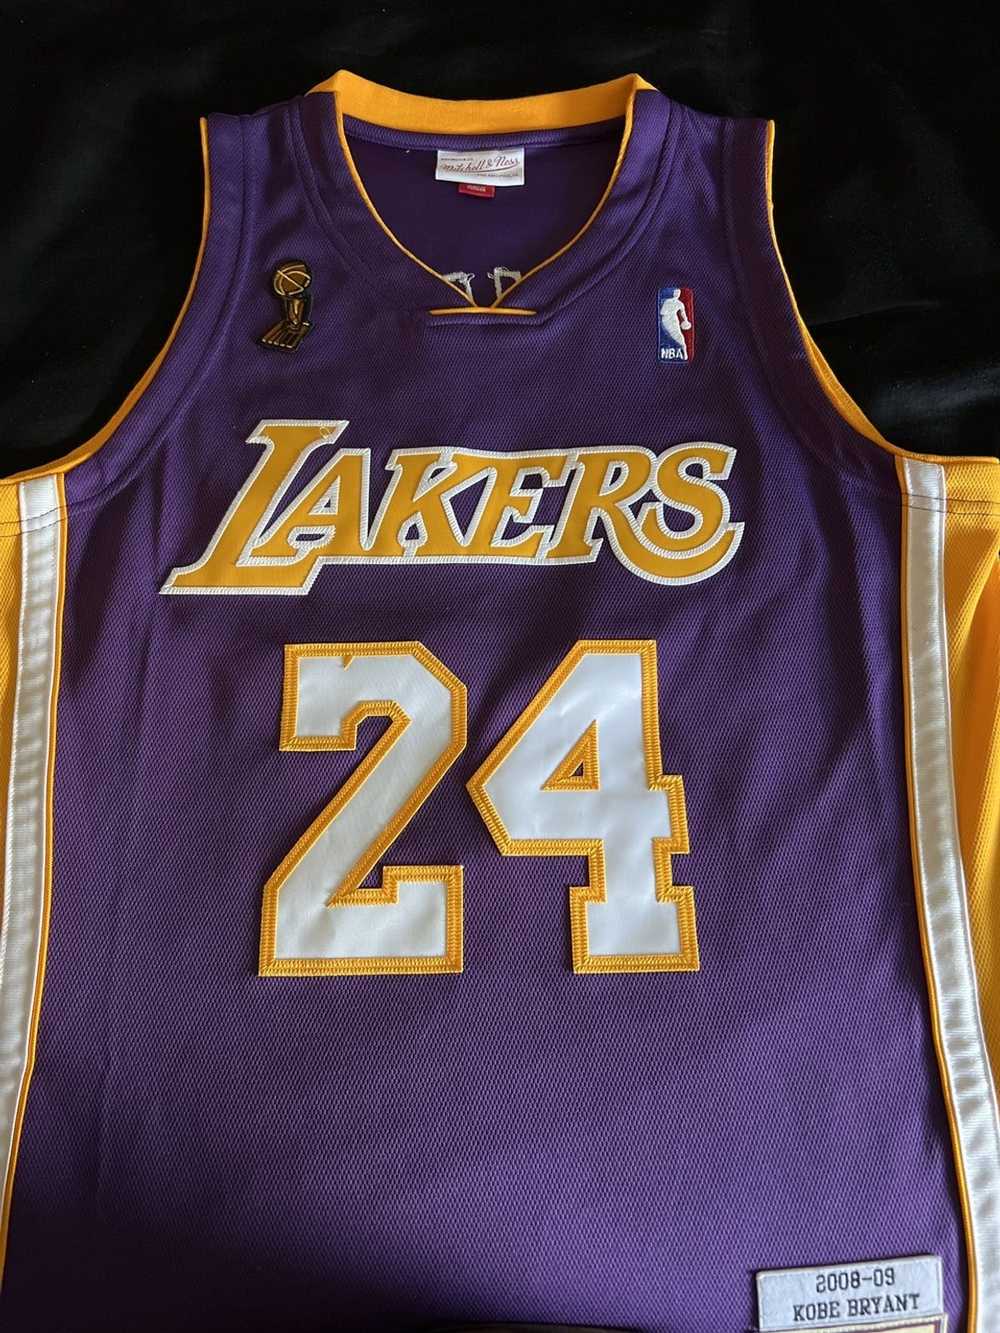 NBA Lakers Kobe Bryant 08-09 - image 1